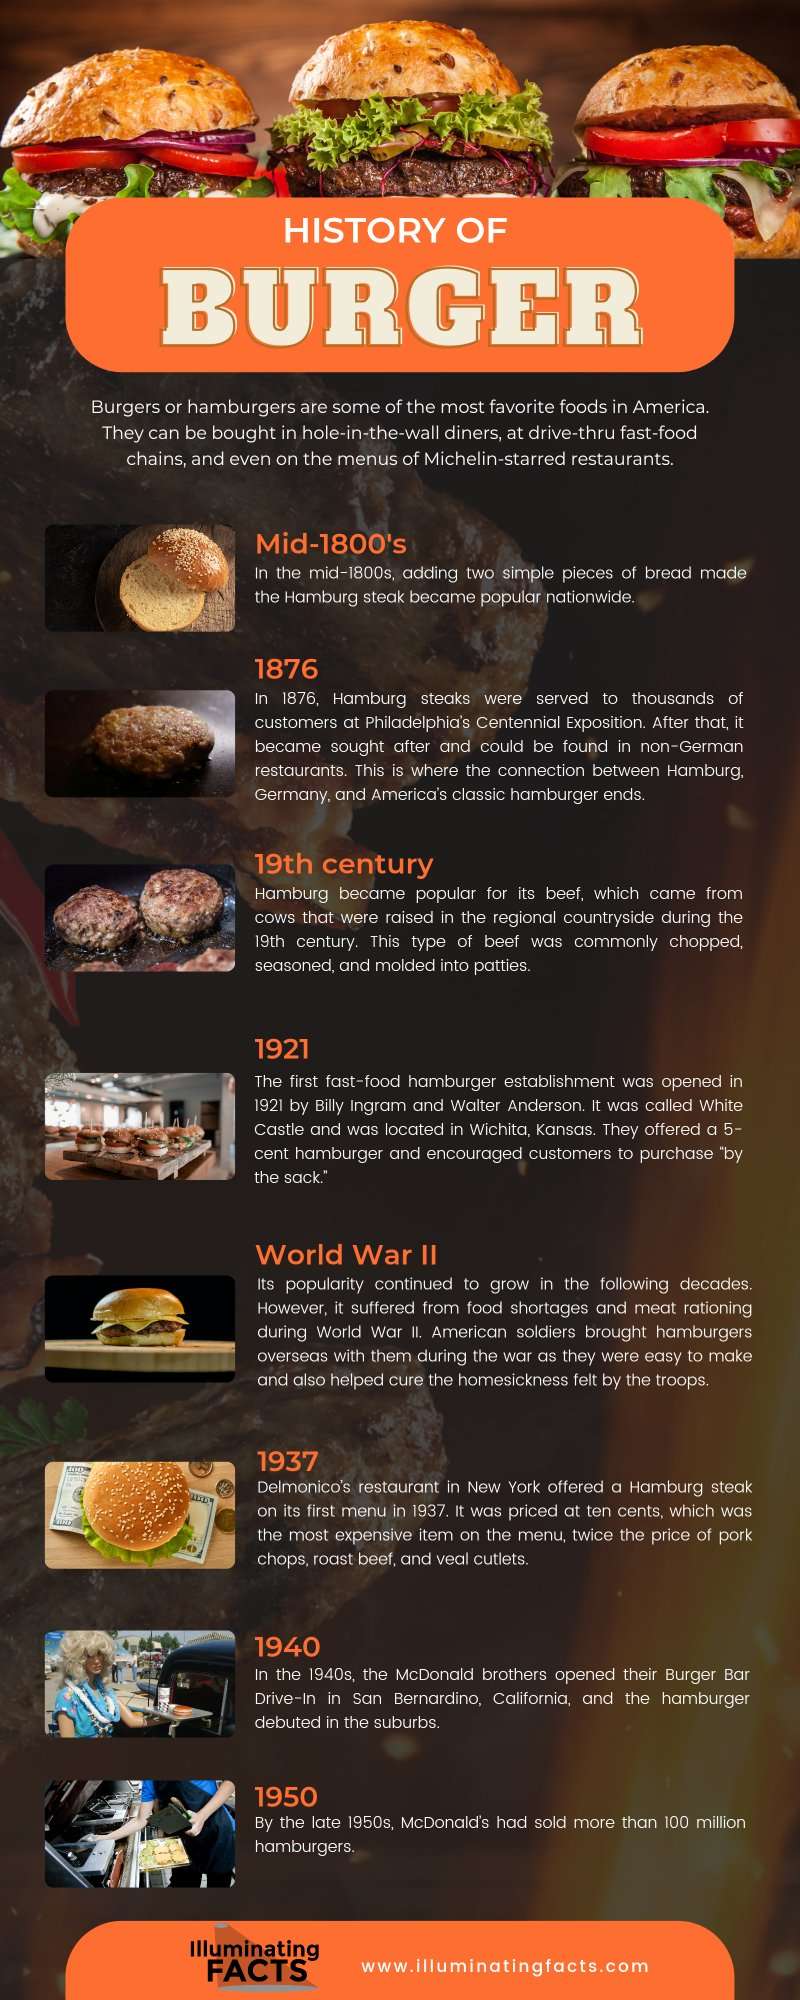 History of Burger